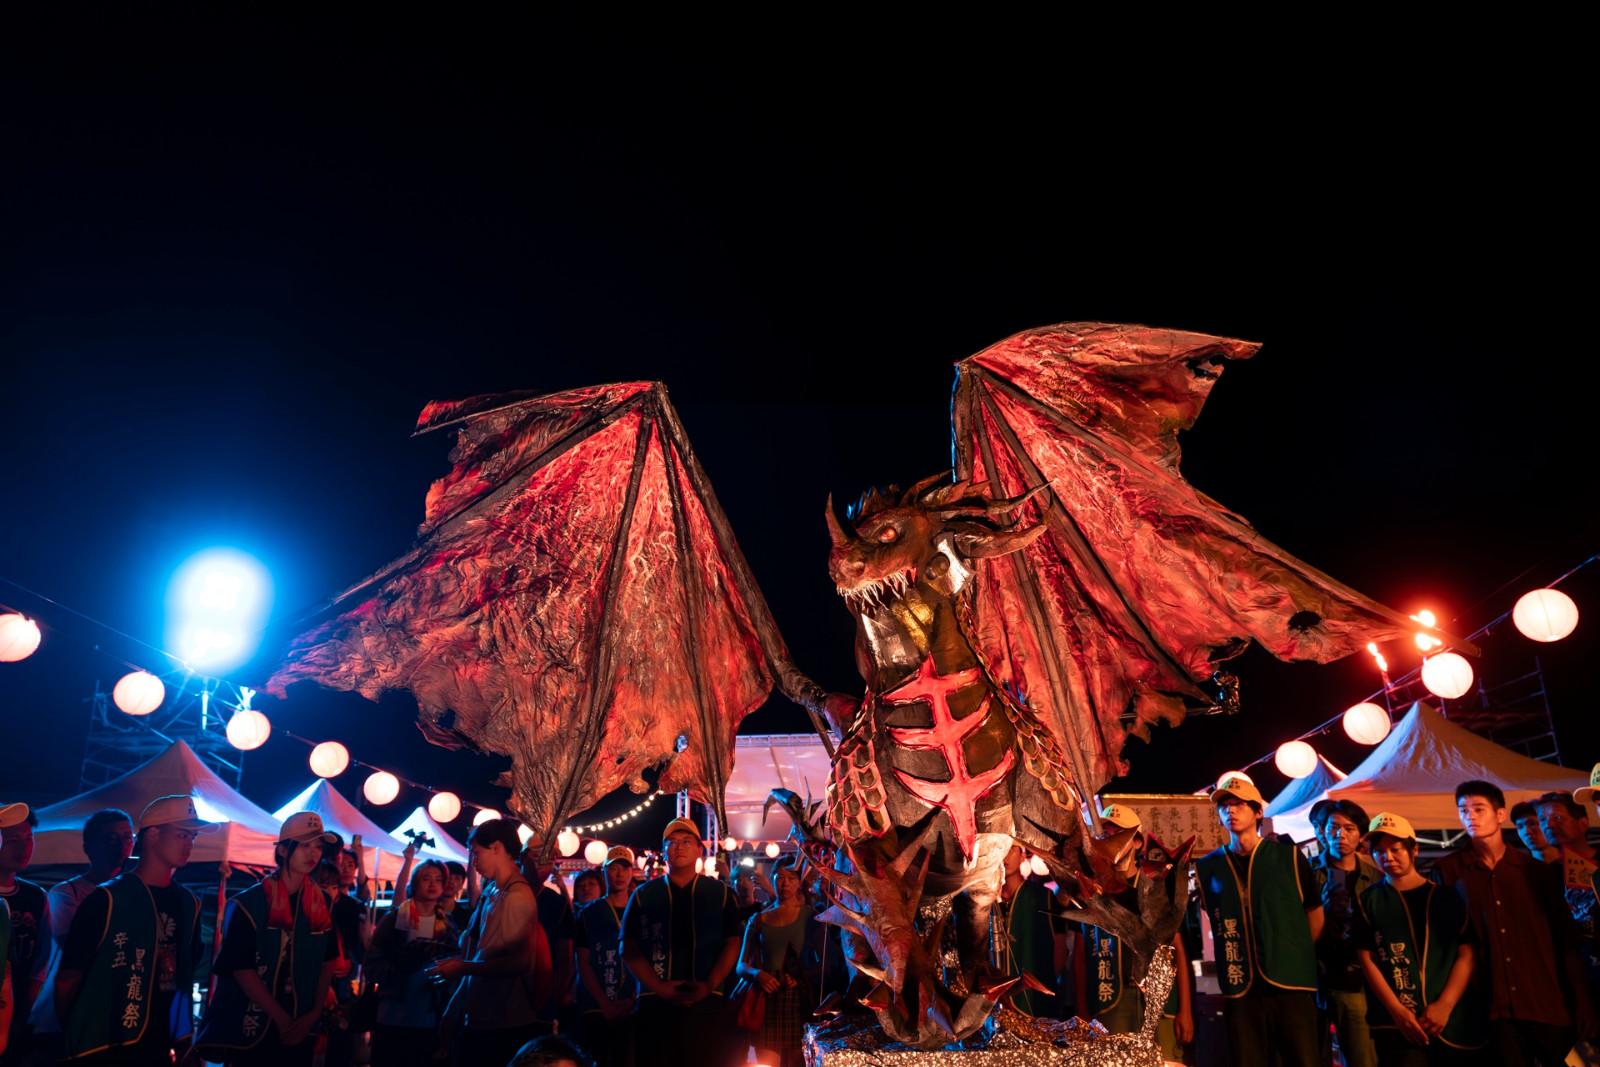 陳志良藝師首次跨界與流行遊戲文化合作，製作高達2公尺、身上布滿逾200片龍鱗的糊紙死亡之翼